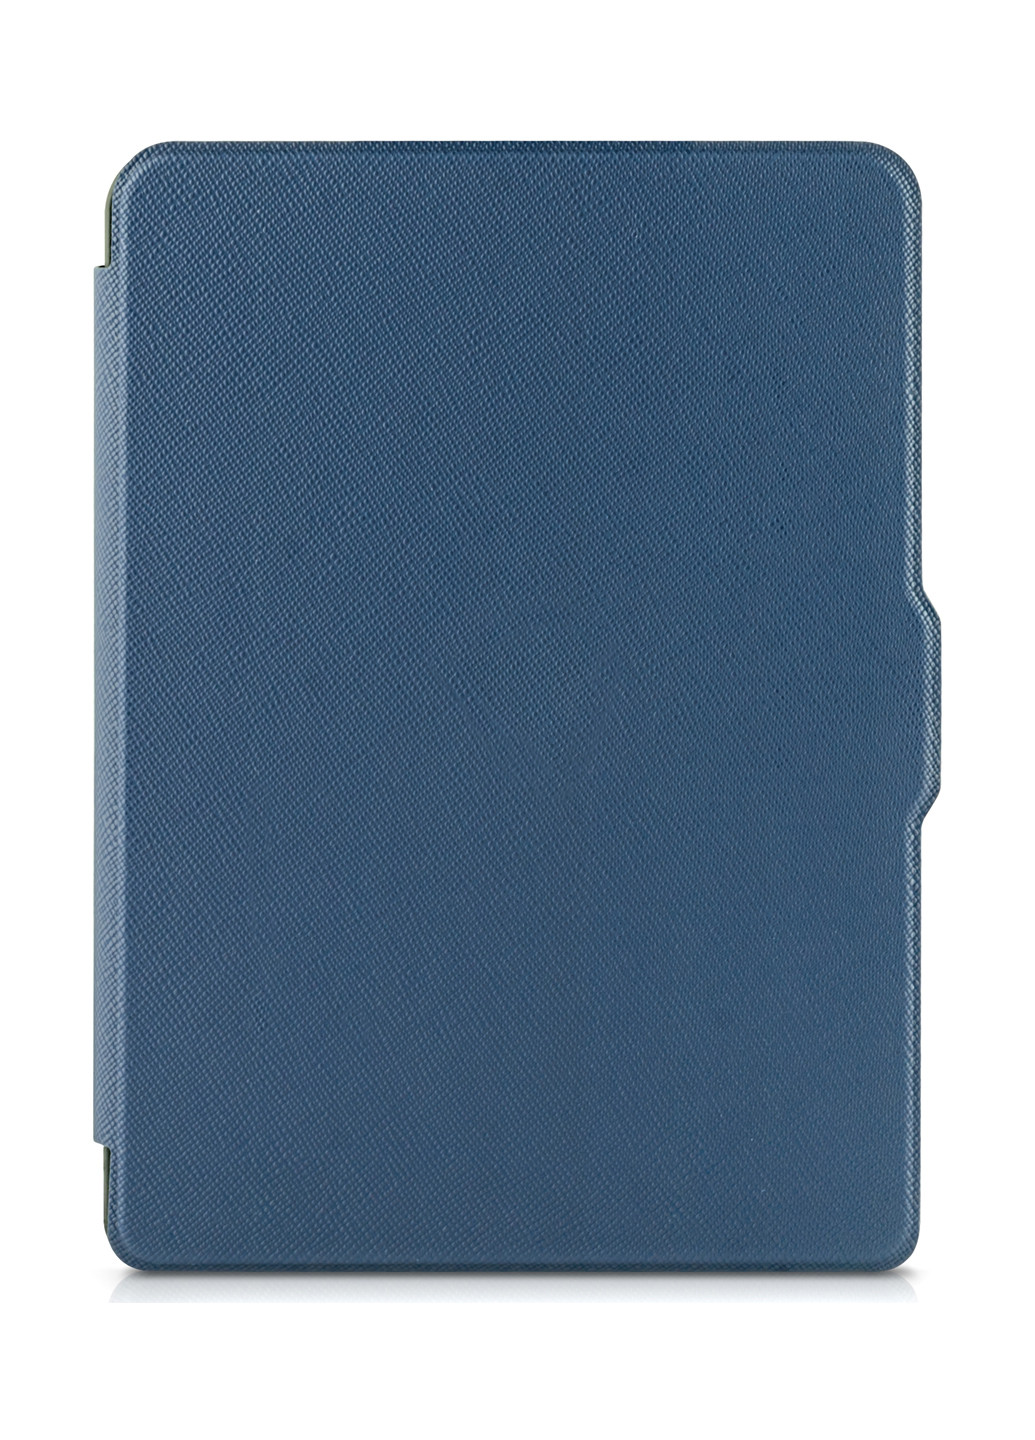 Електронна книга СITY LED + чохол Premium Blue AirBook сity led + чехол premium blue (150528702)